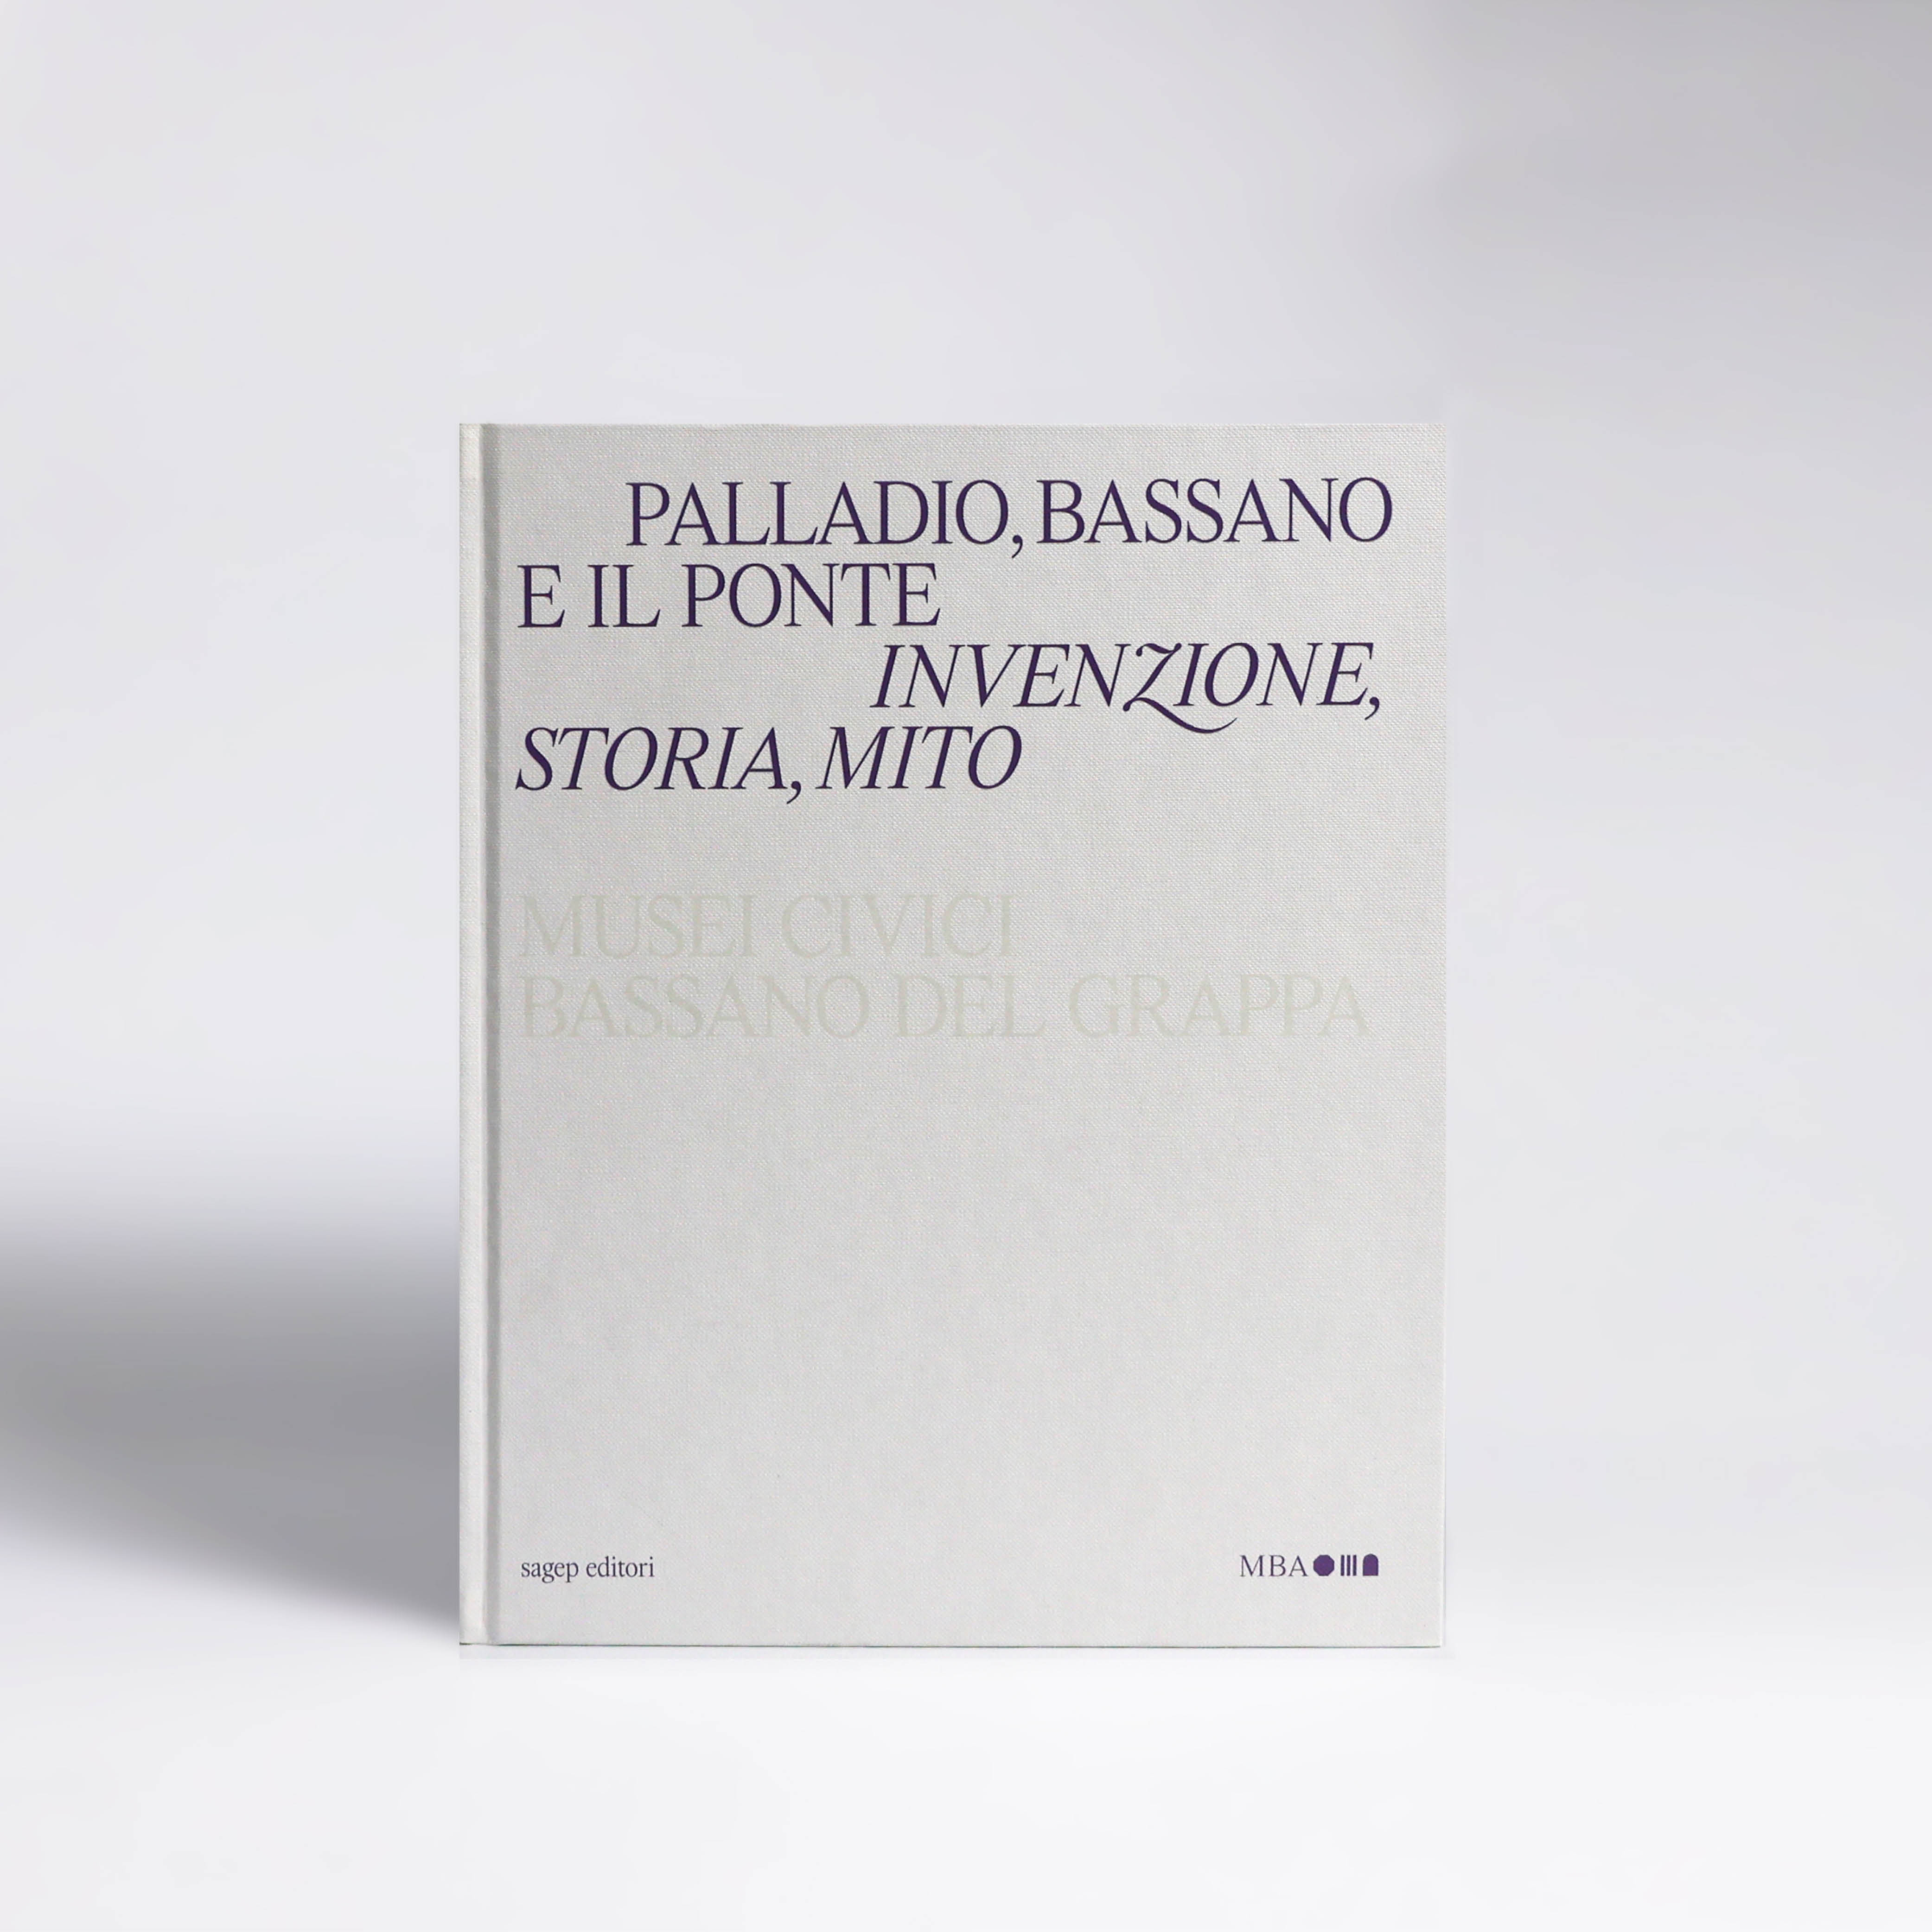 Palladio, Bassano e il ponte. Invenzione, storia e mito